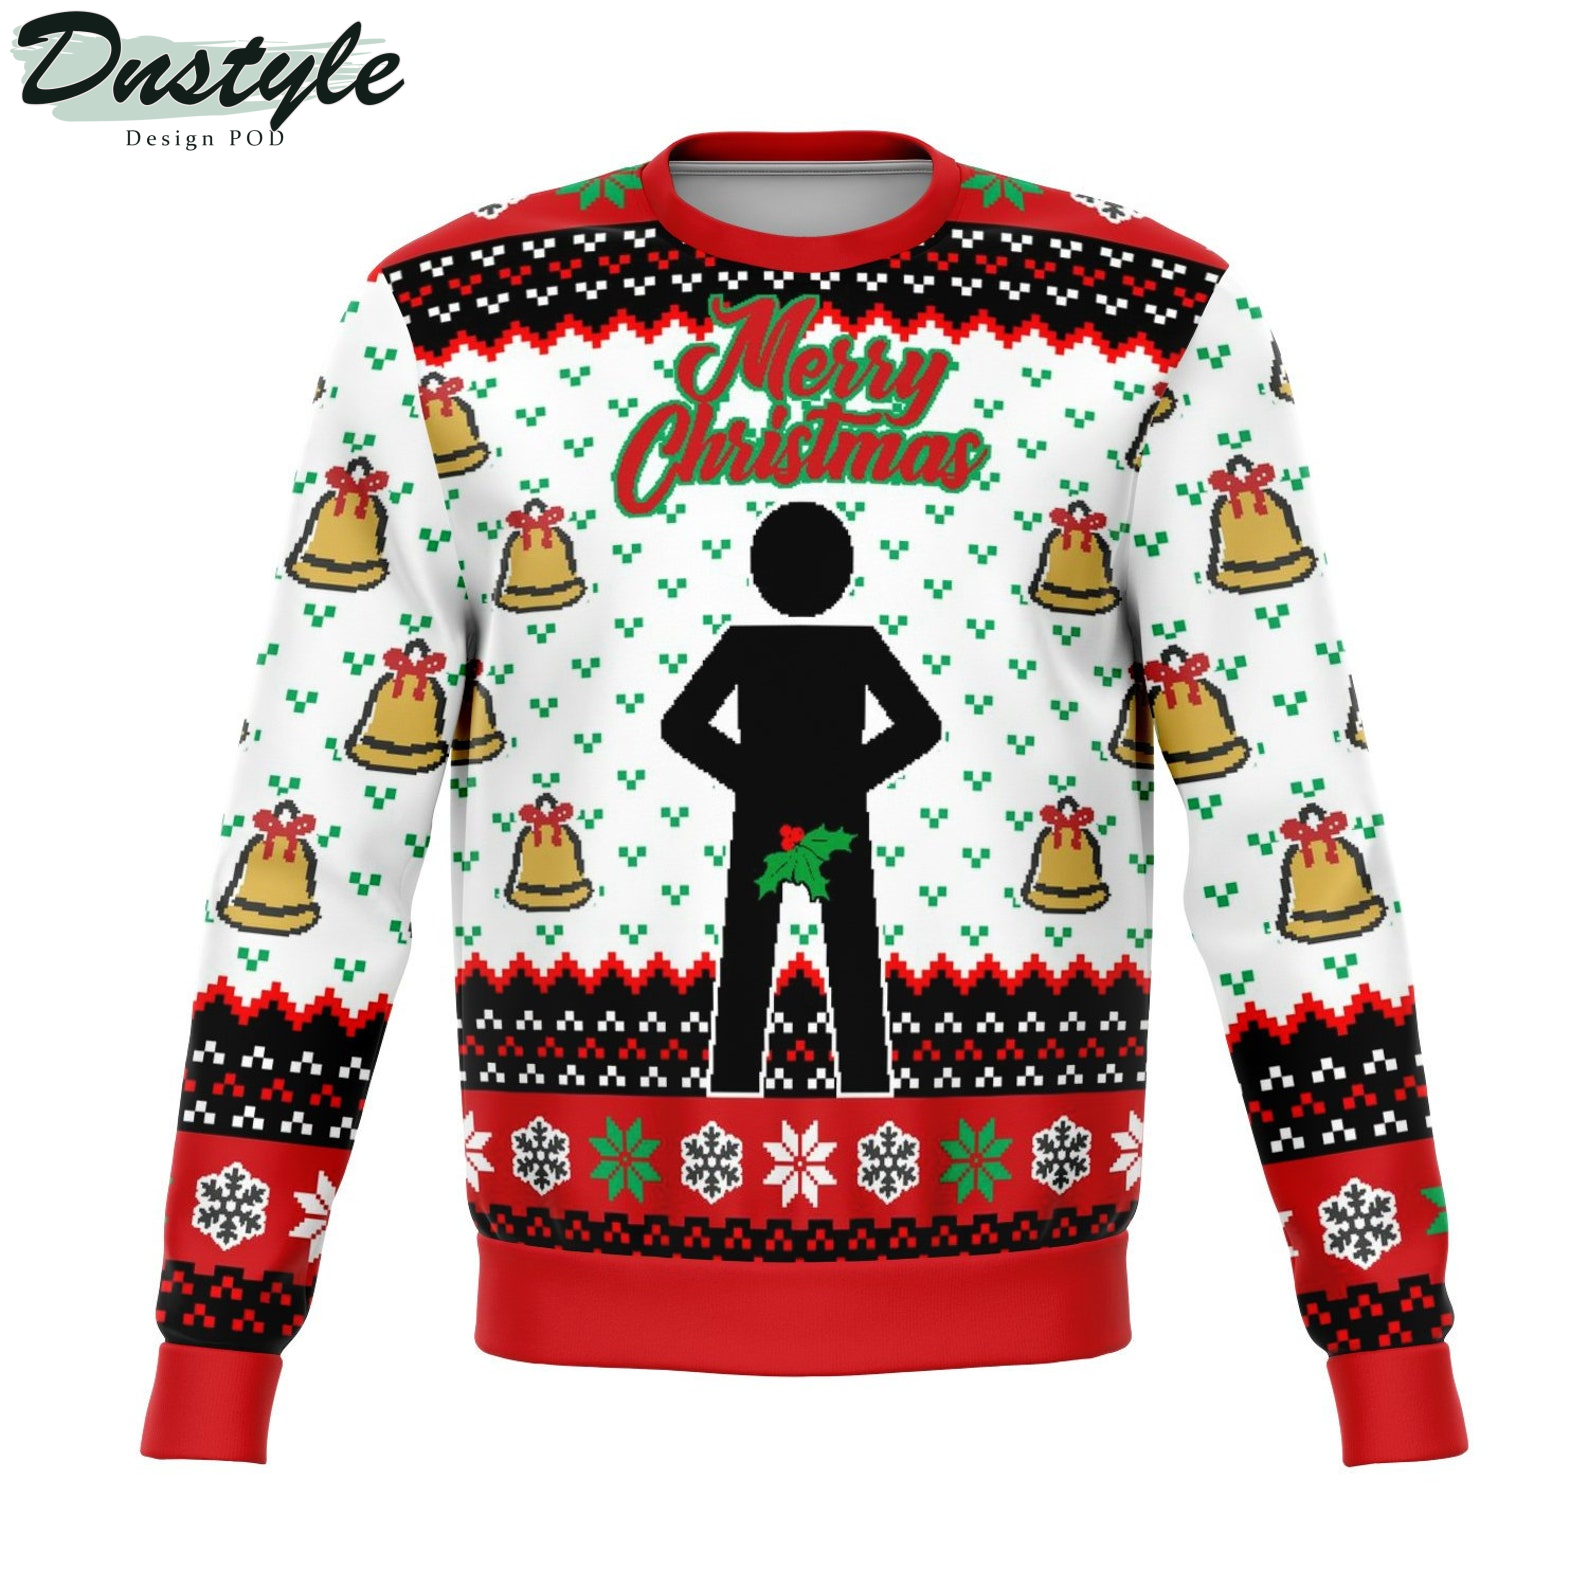 Mr. Stick Mistletoe 2022 Ugly Christmas Sweater